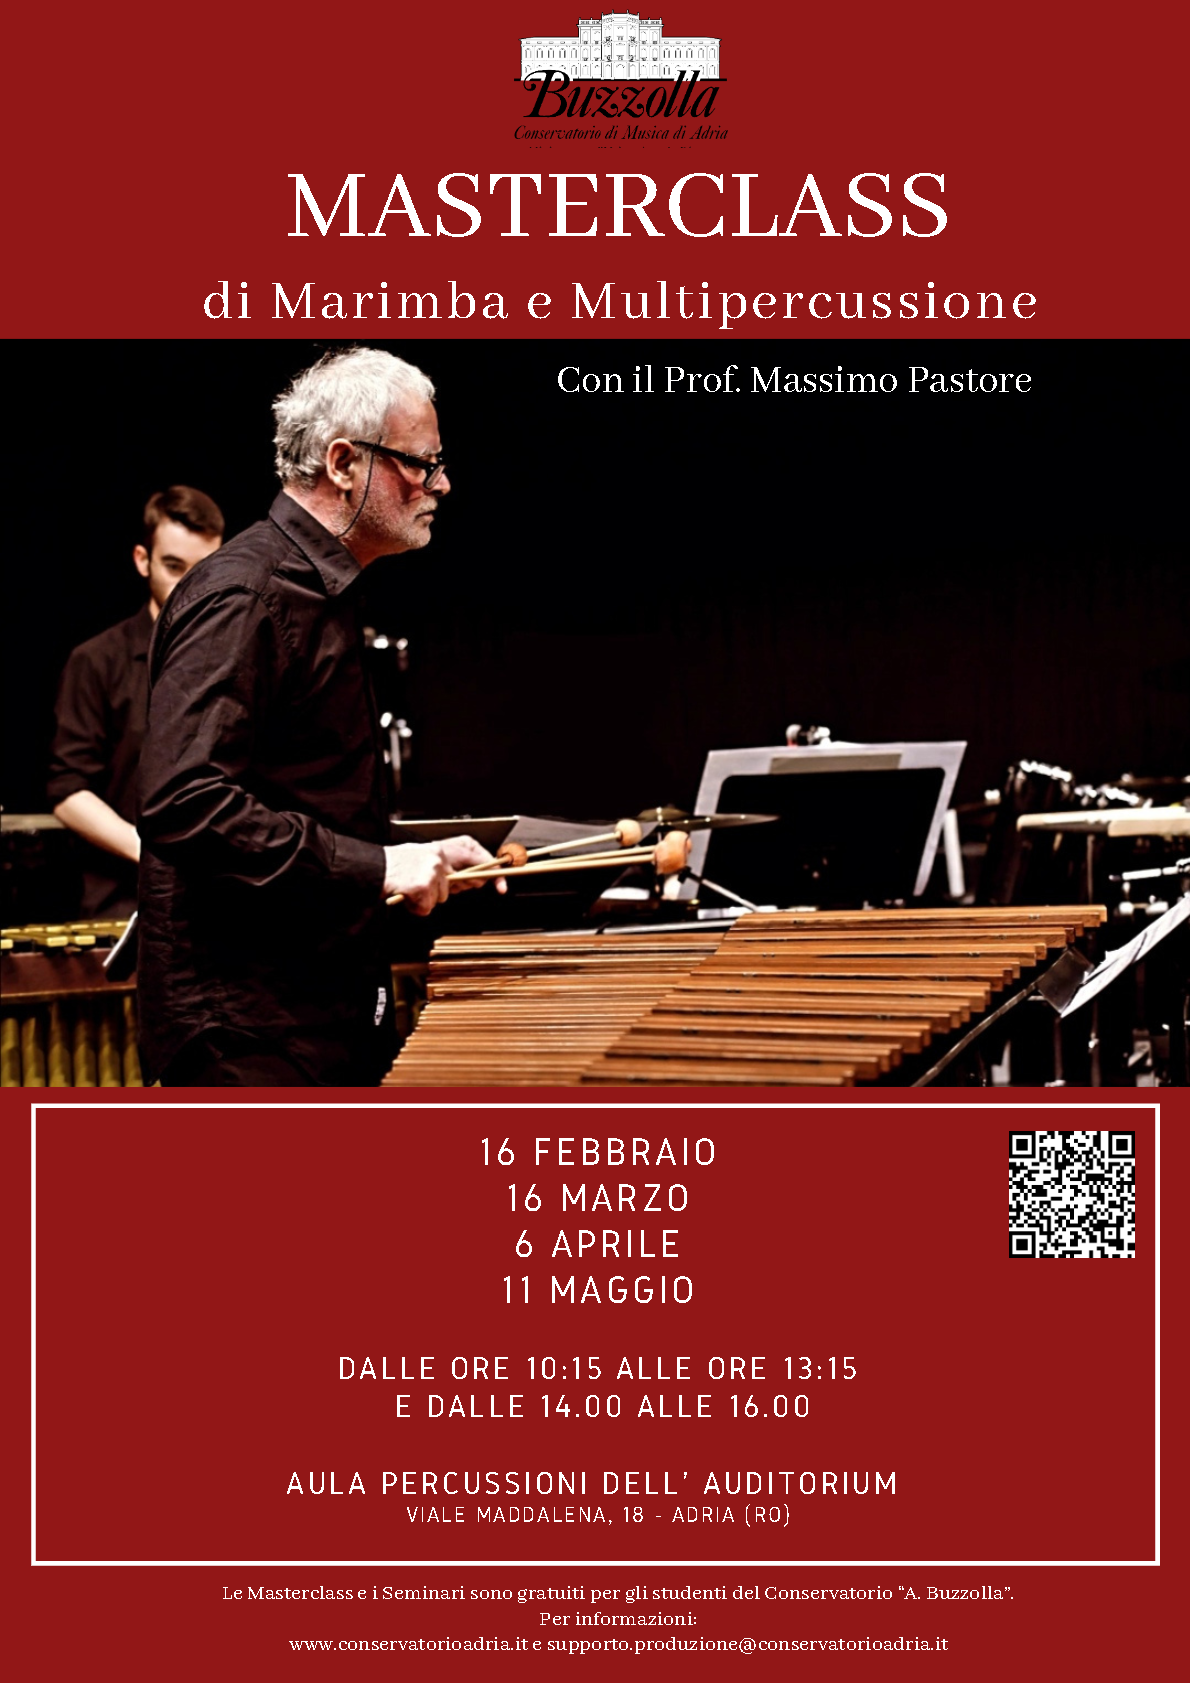 Masterclass di Marimba e Multipercussione